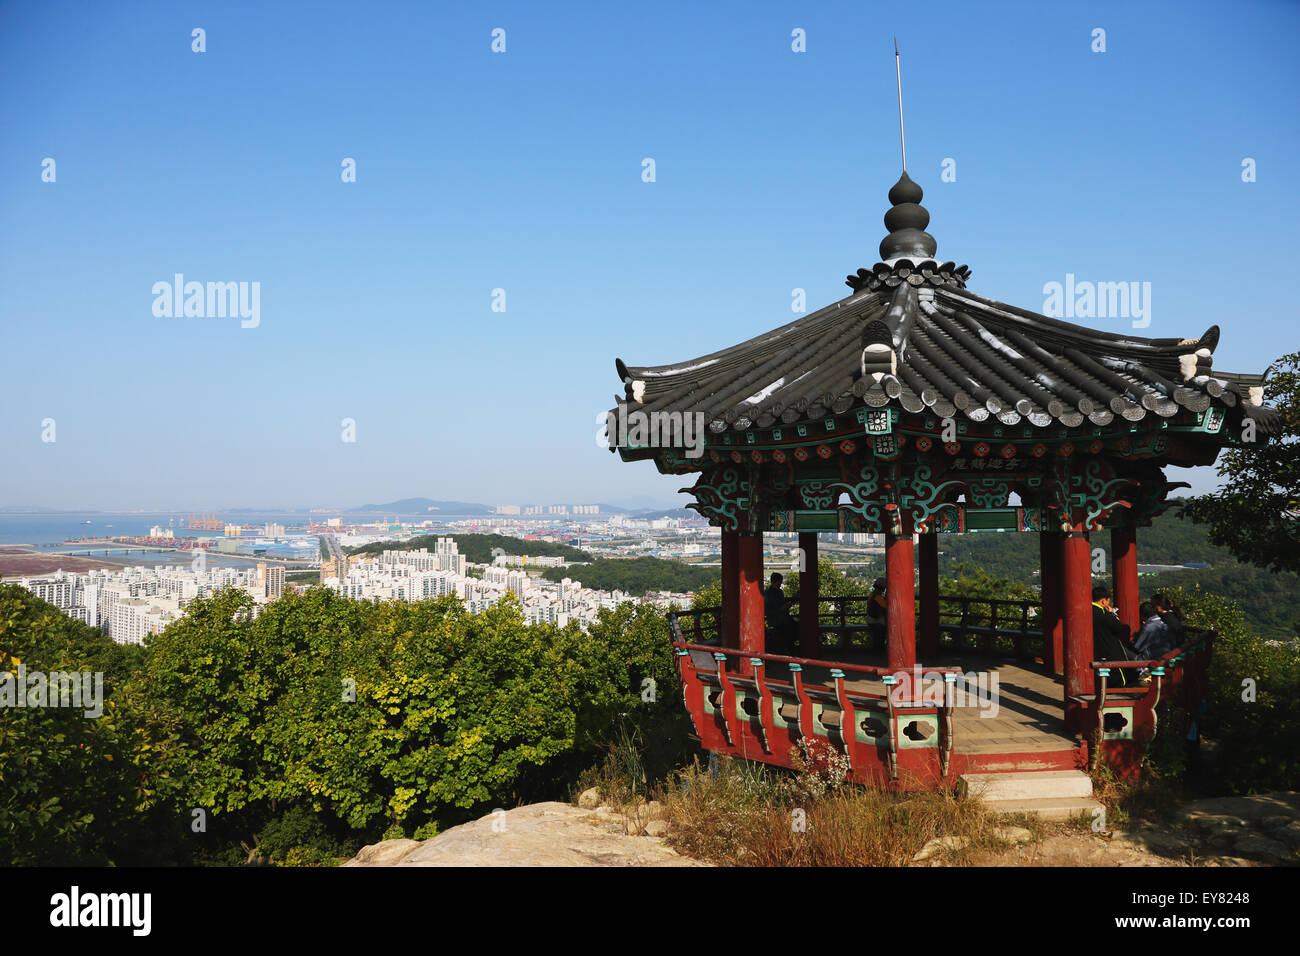 Plate-forme d'observation et cityscape, Corée du Sud Banque D'Images